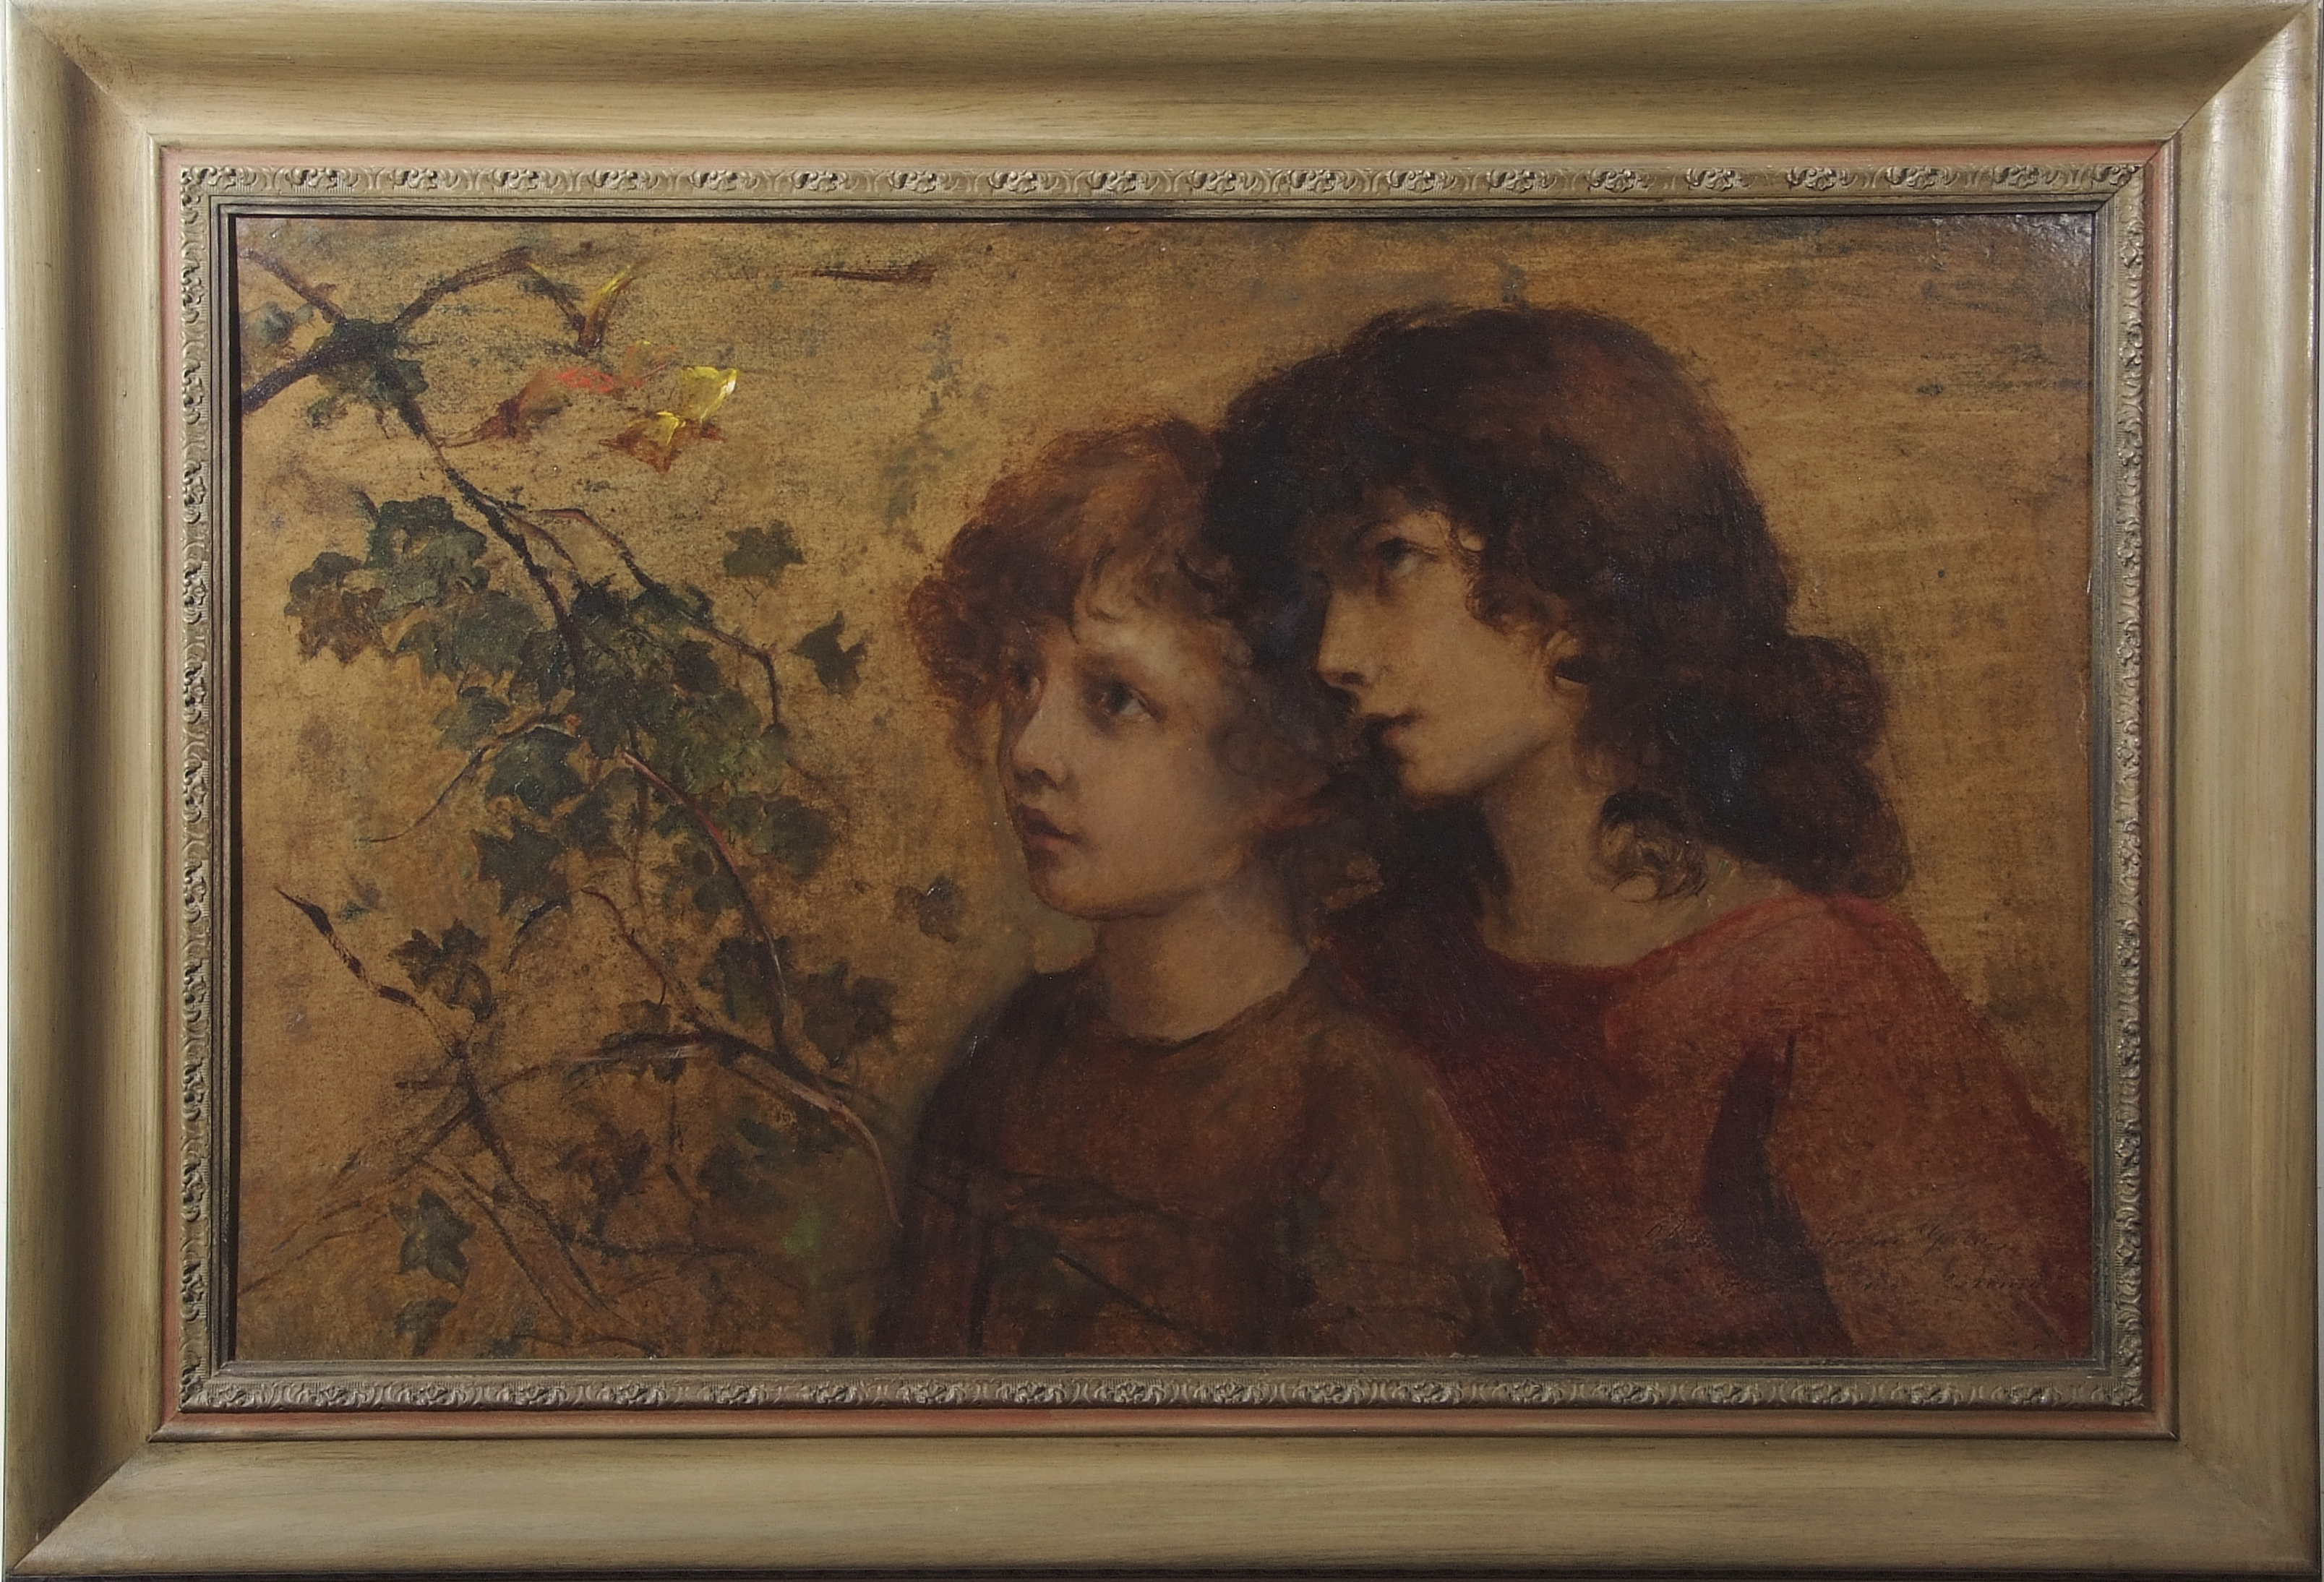 Rosina Mantovani Gutti (1851-1943), Pre-Raphaelite children, oil on board, signed and inscribed "